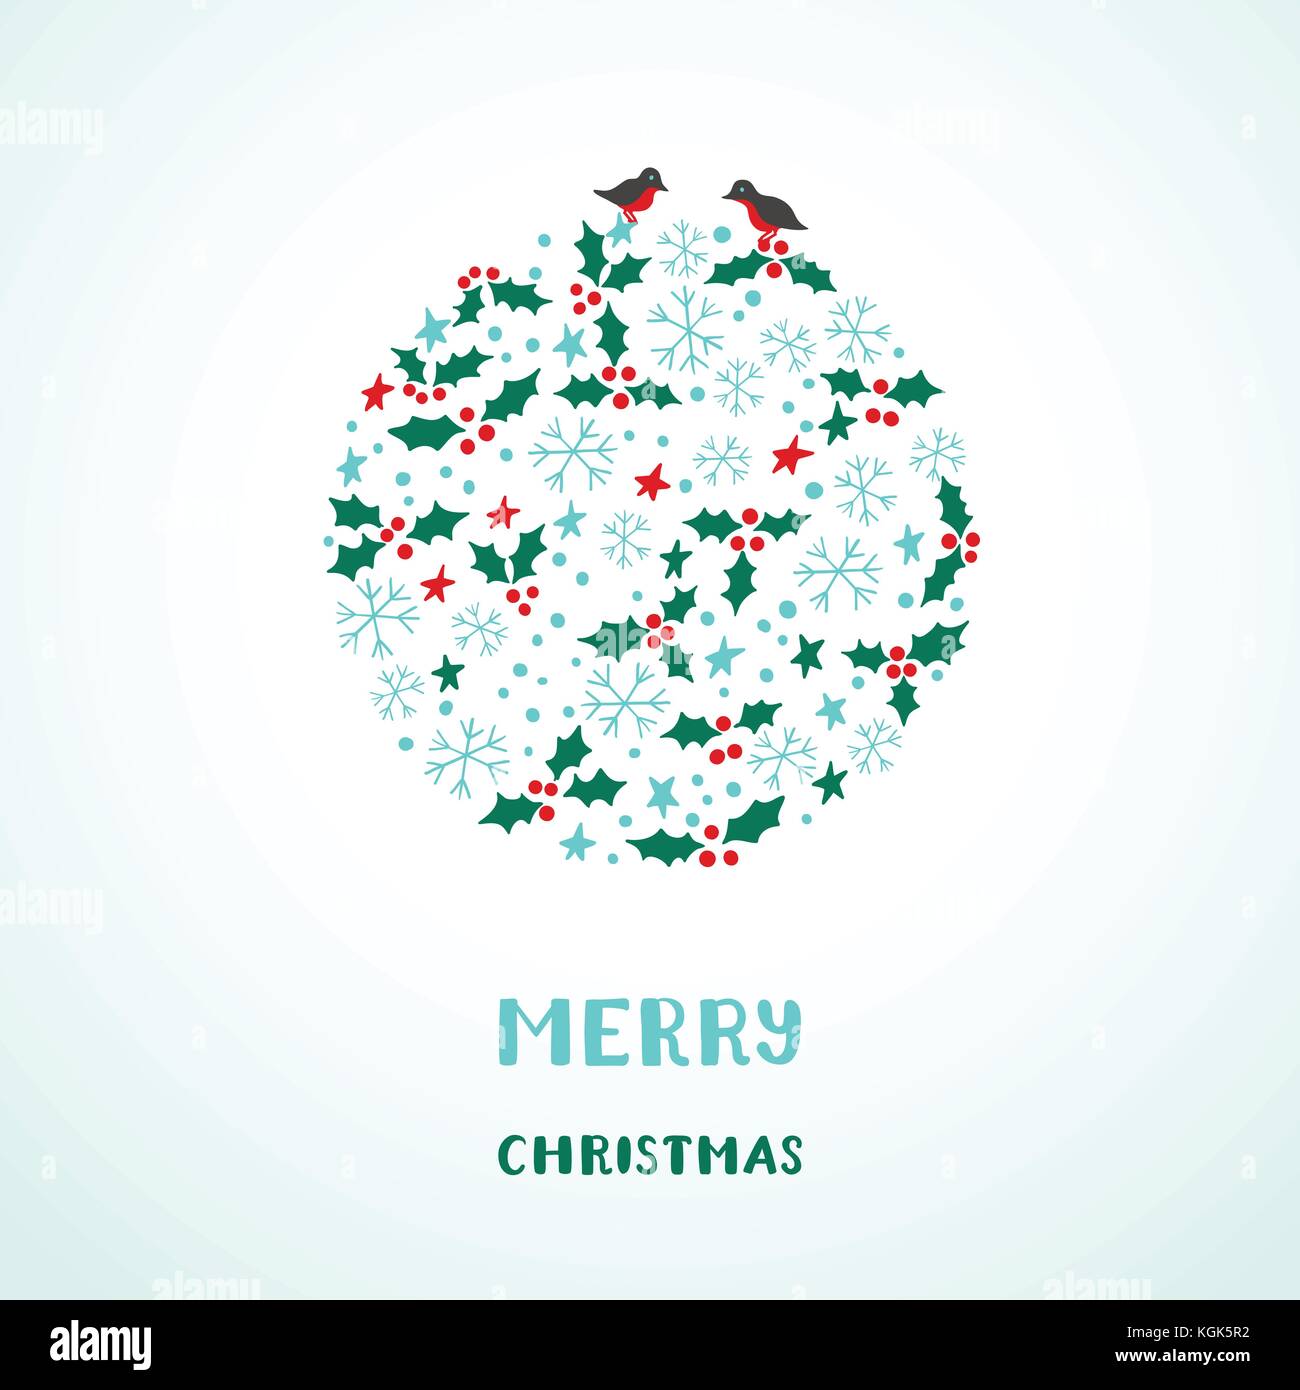 Weihnachtskarte mit Schneeflocken, Sterne, Vögel und Holly Stock Vektor